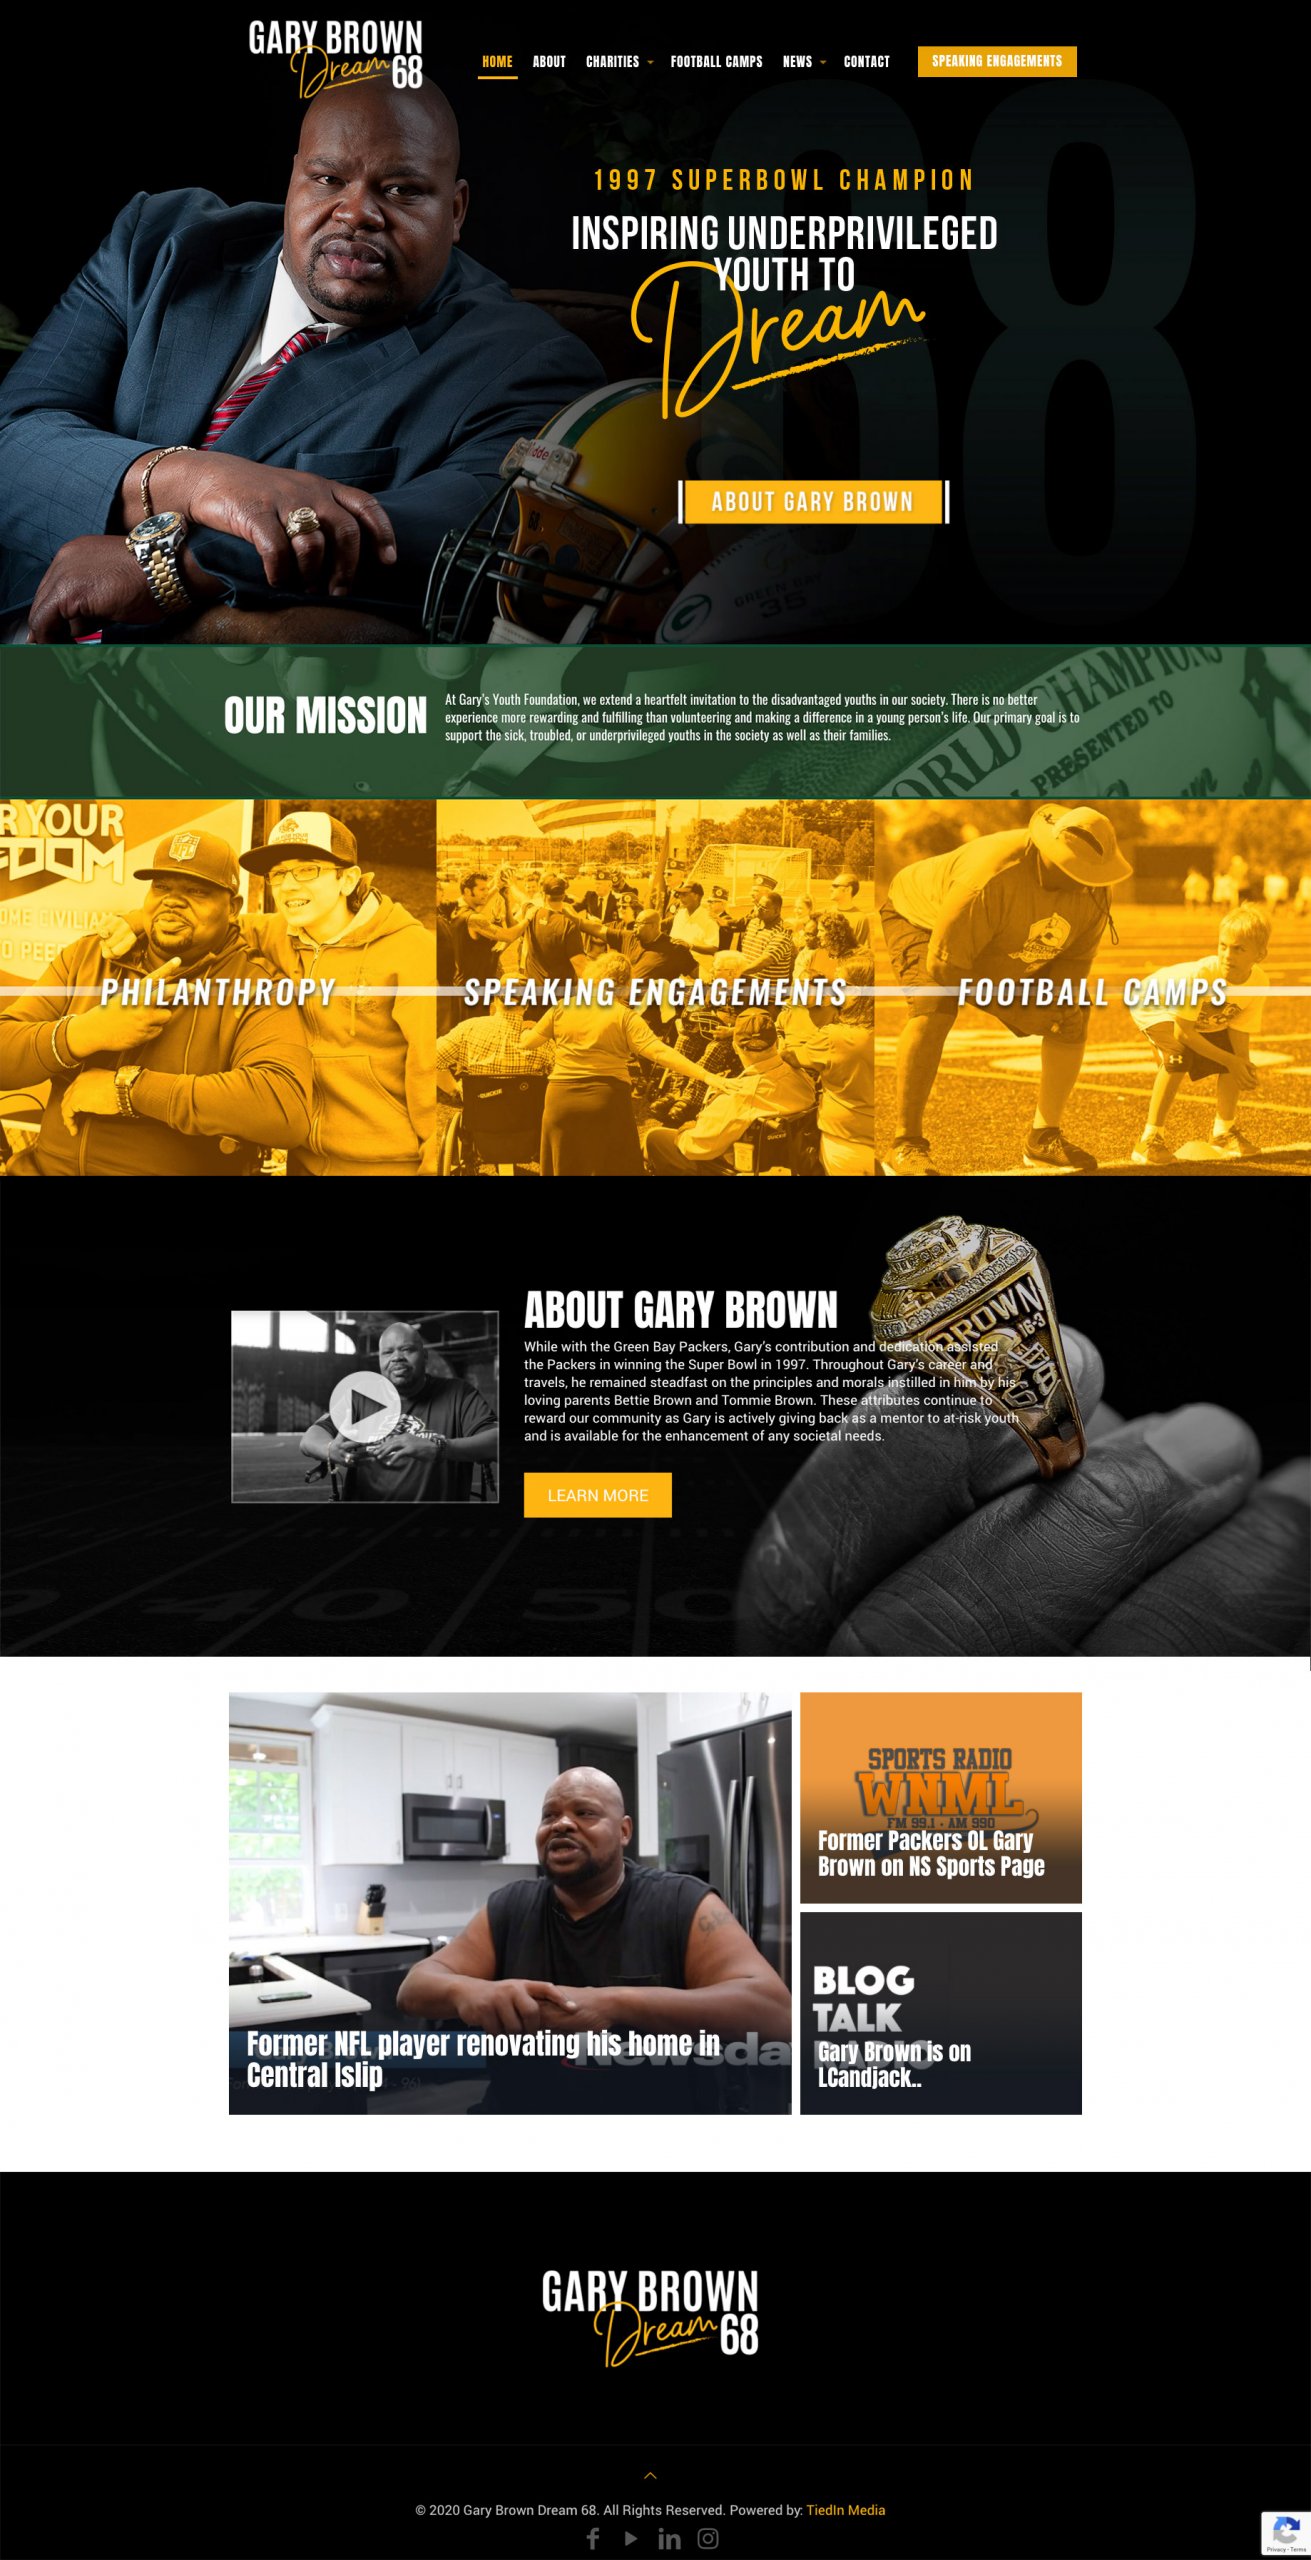 Gary Brown Dream 68 website homepage